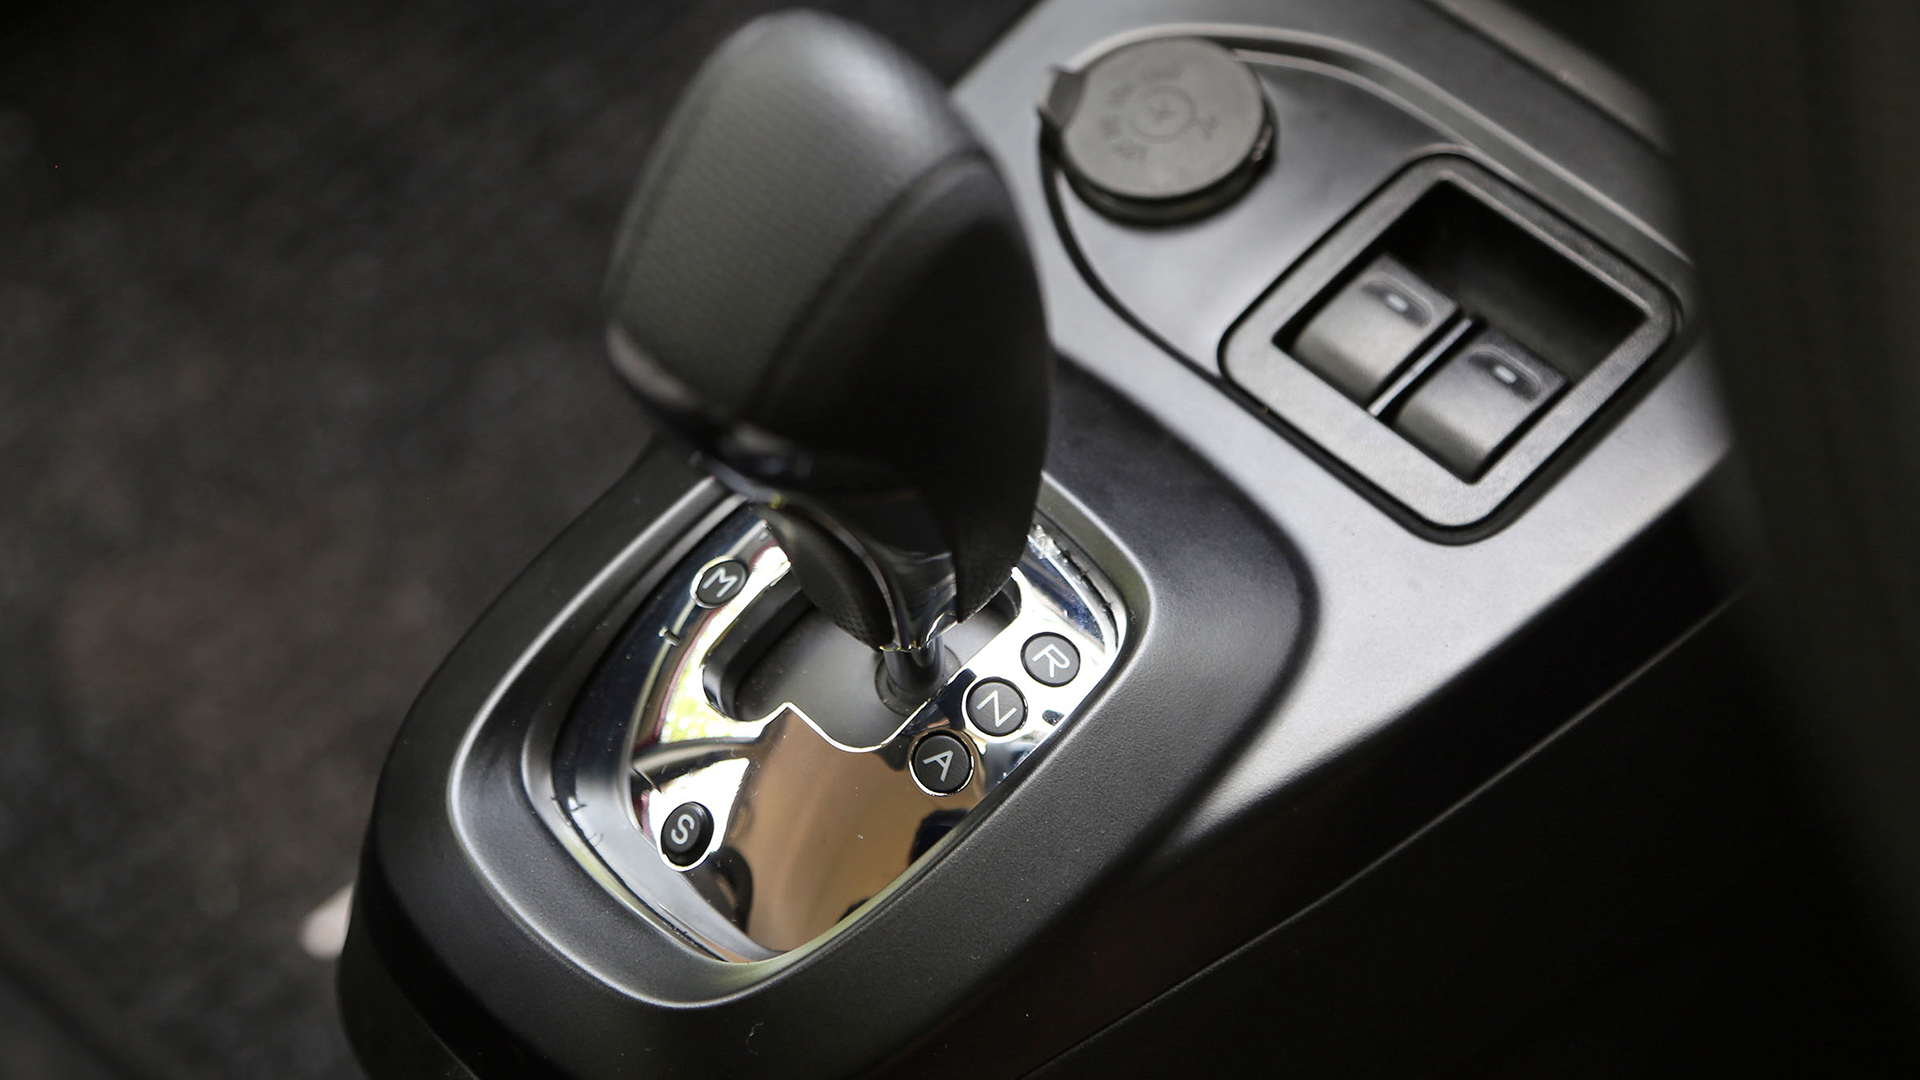 Tata Nano 2015 XE Interior Car Photos - Overdrive